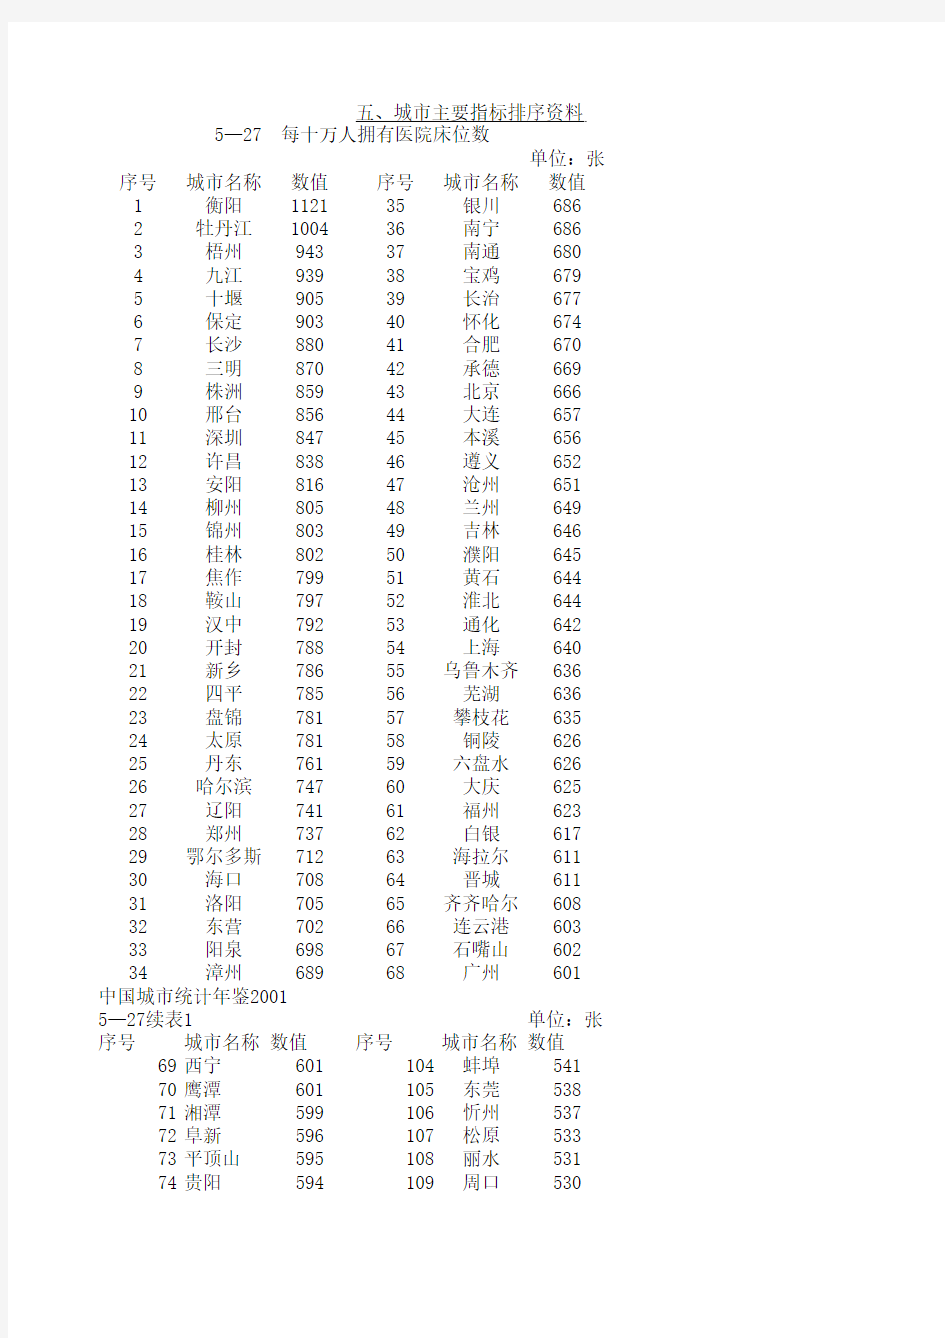 2003 中国城市统计年鉴